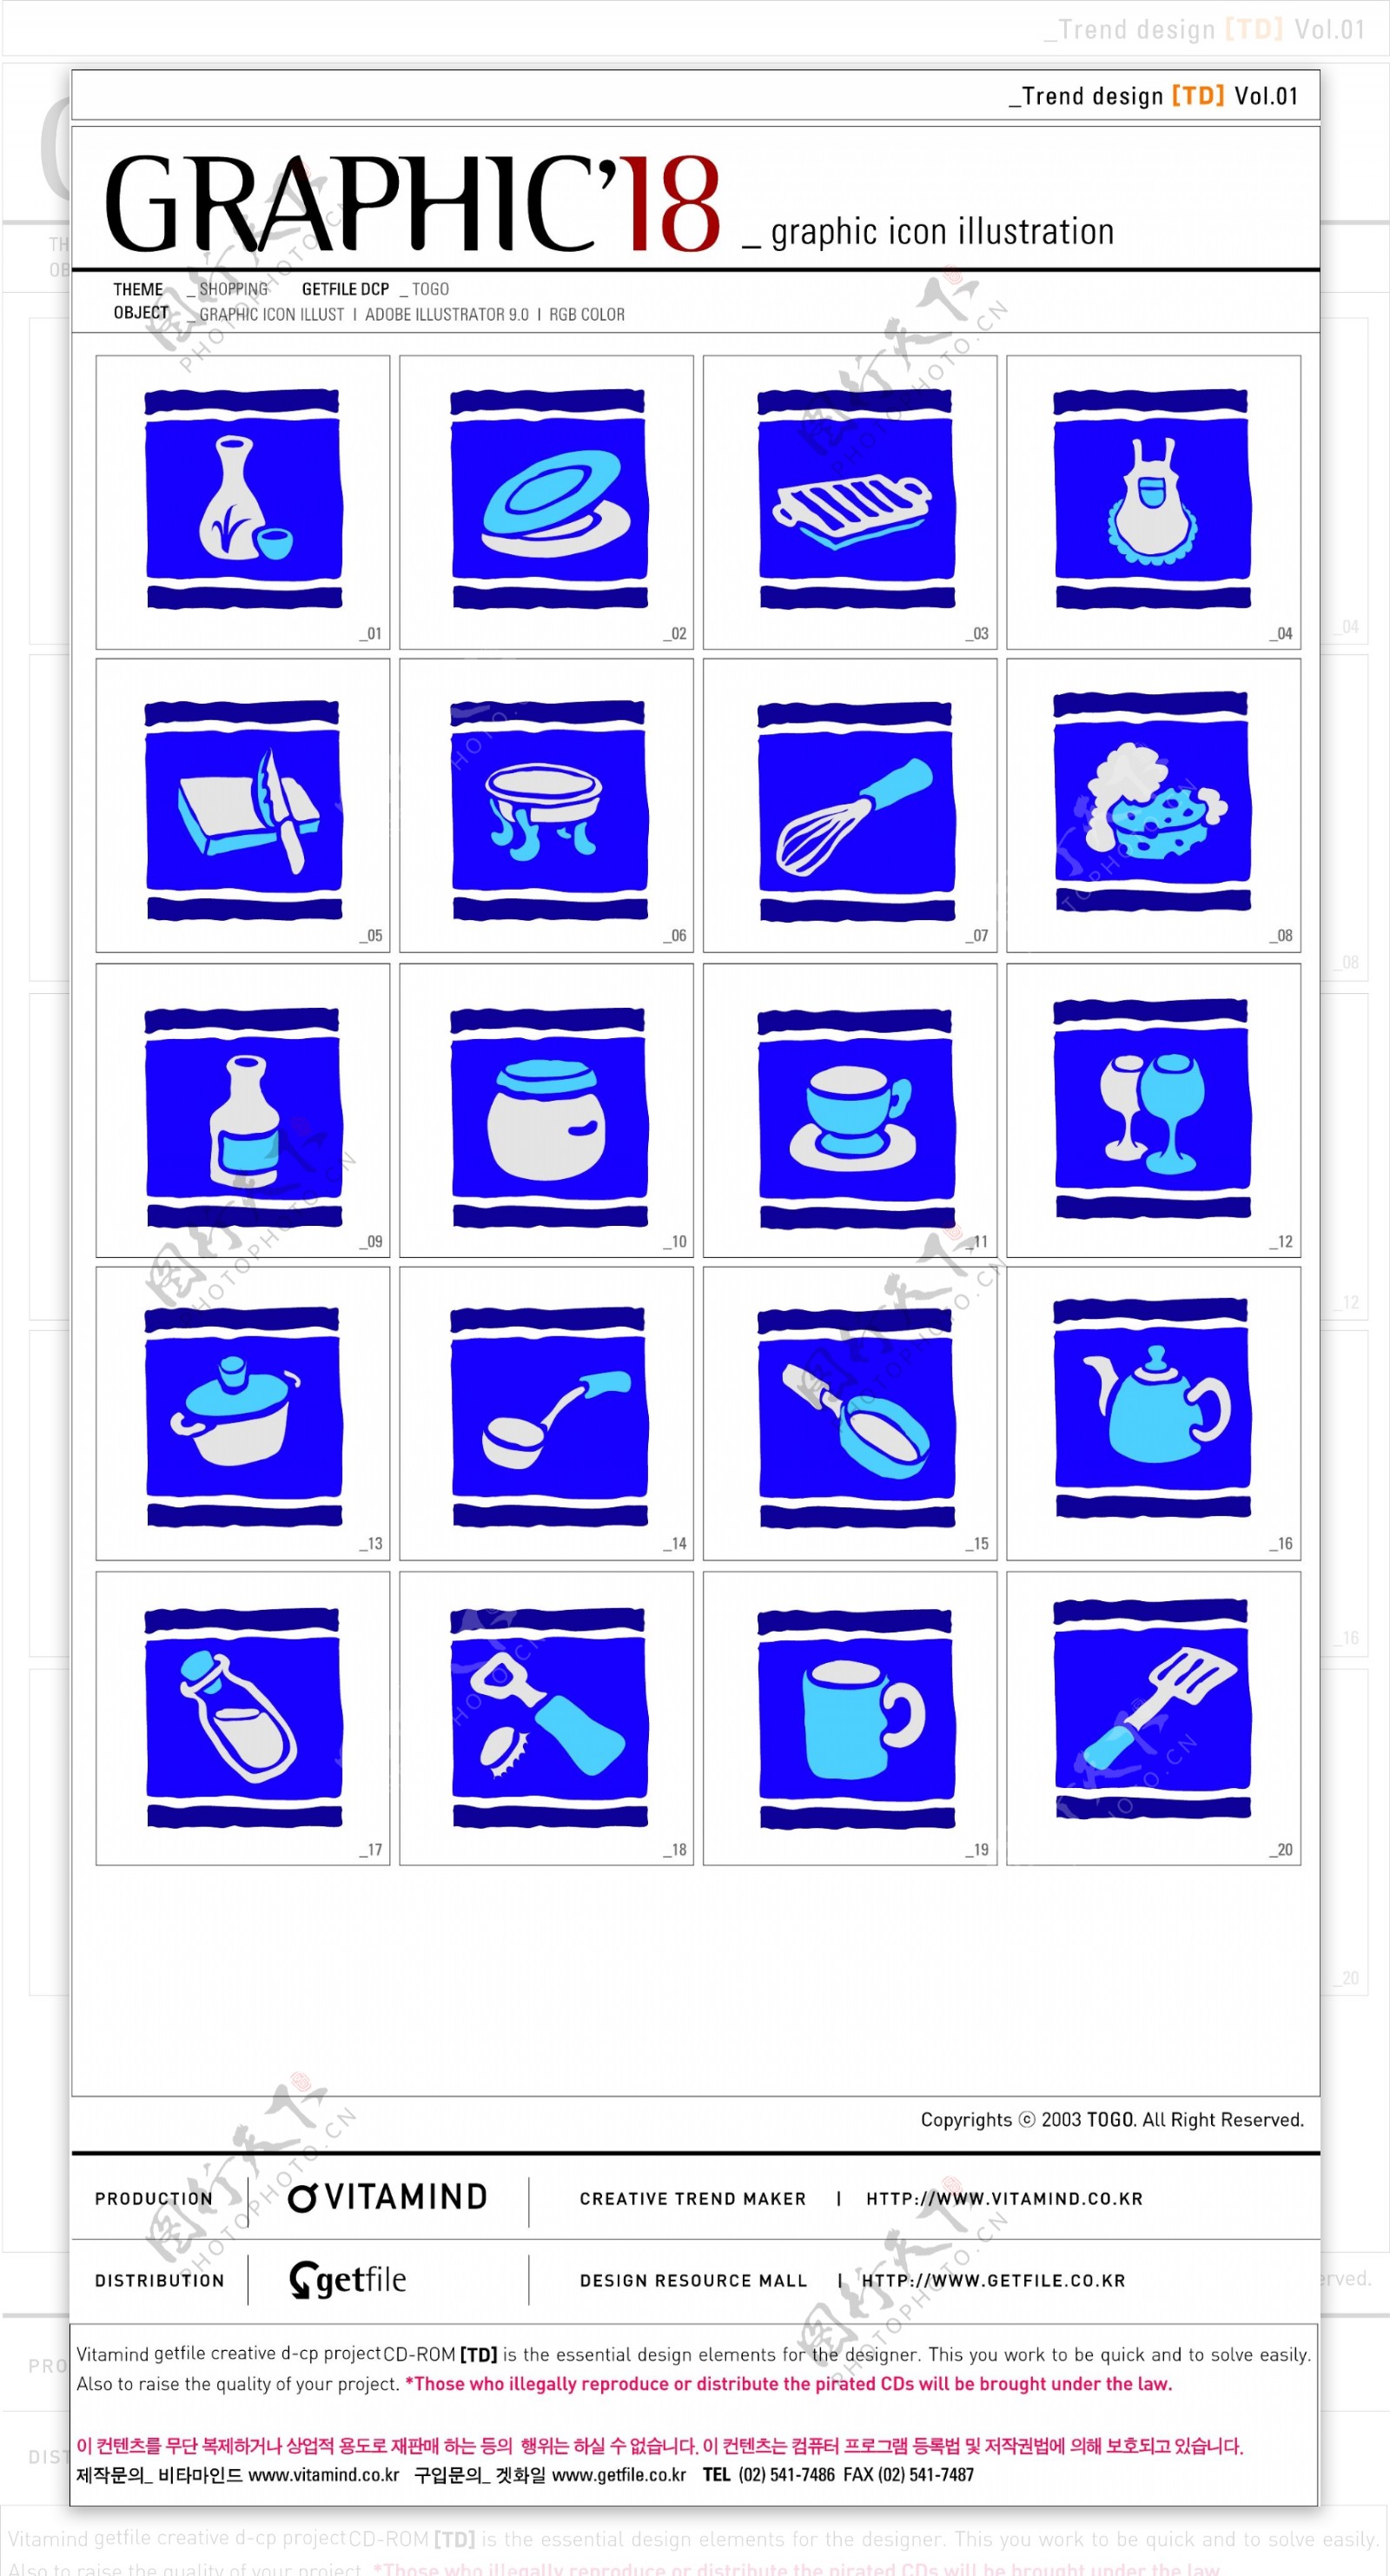 厨房餐具系列矢量图标